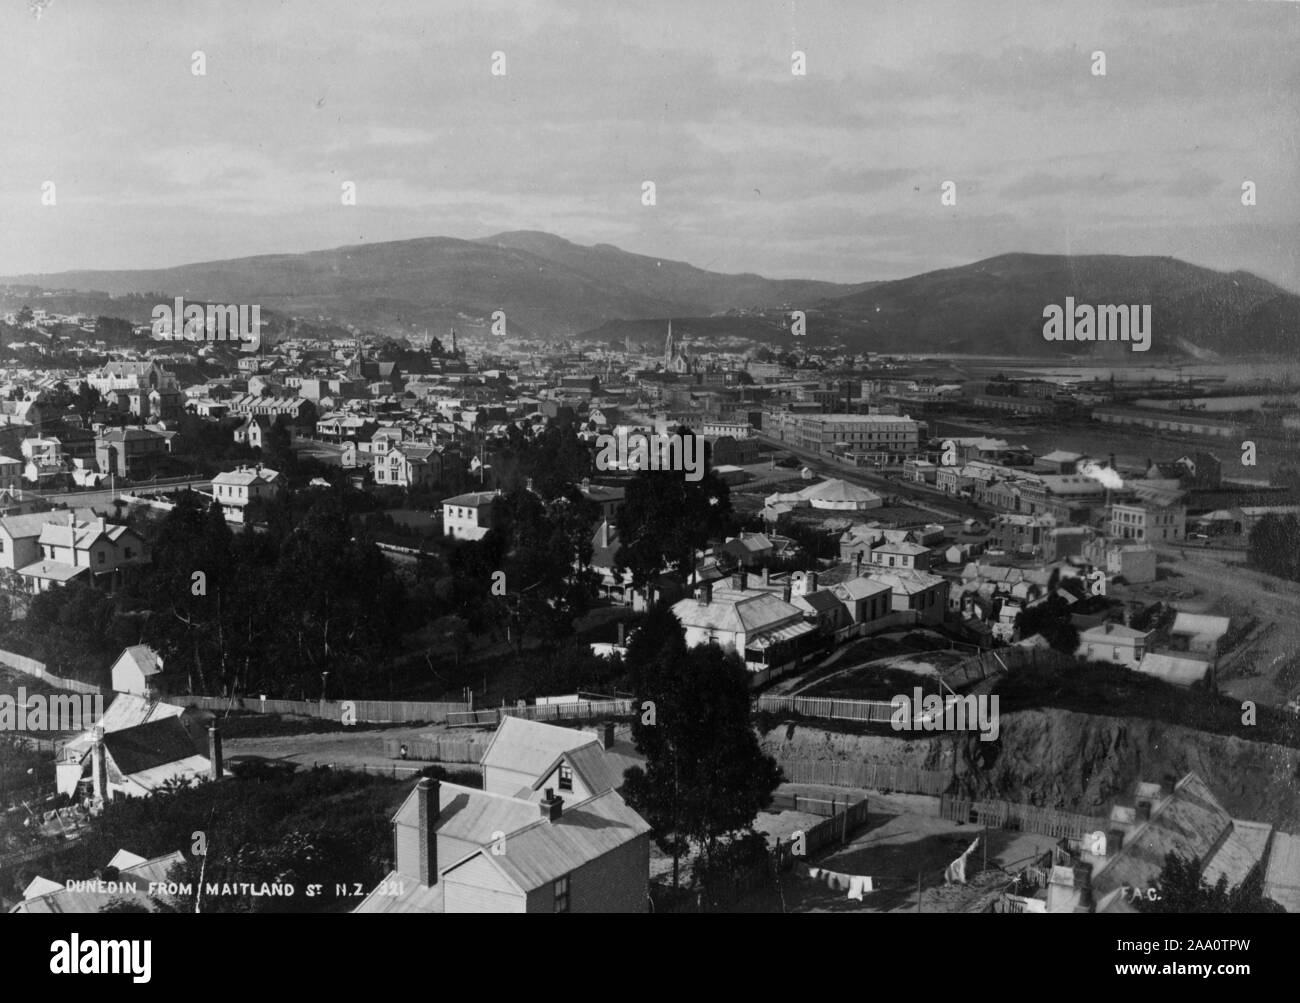 Photographie noir et blanc photographie paysage urbain de la ville de Dunedin avec une chaîne de montagnes en arrière-plan, dans l'île du Sud, Nouvelle-Zélande, par le photographe Frank Coxhead, 1885. À partir de la Bibliothèque publique de New York. () Banque D'Images